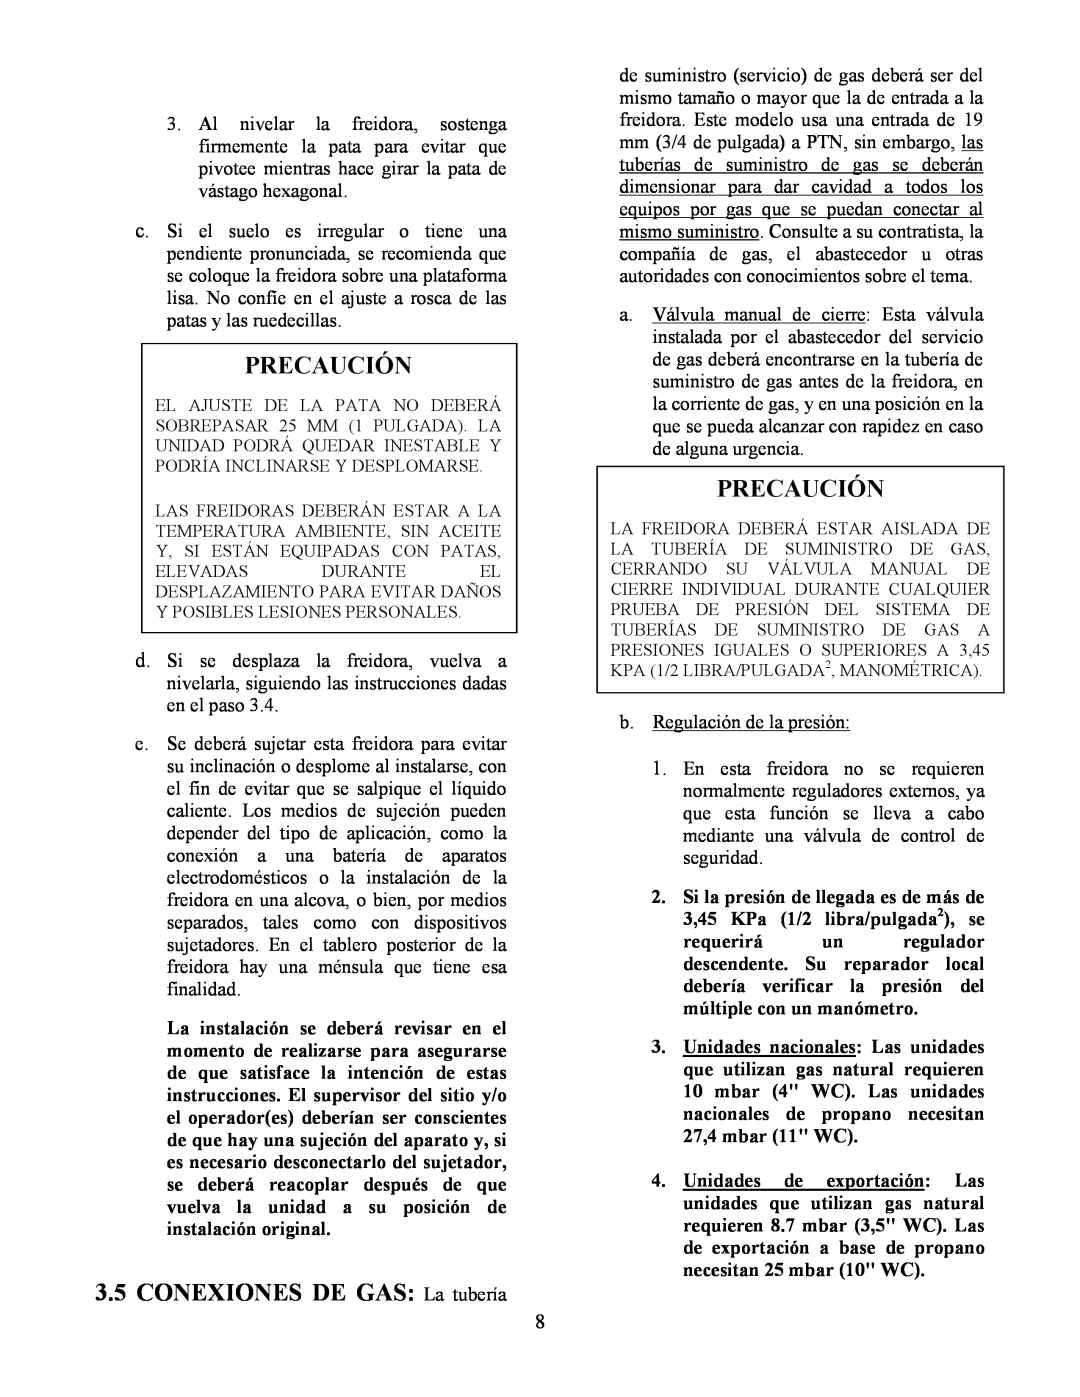 Frymaster Y SM80 manual 3.5CONEXIONES DE GAS La tubería, Precaución 